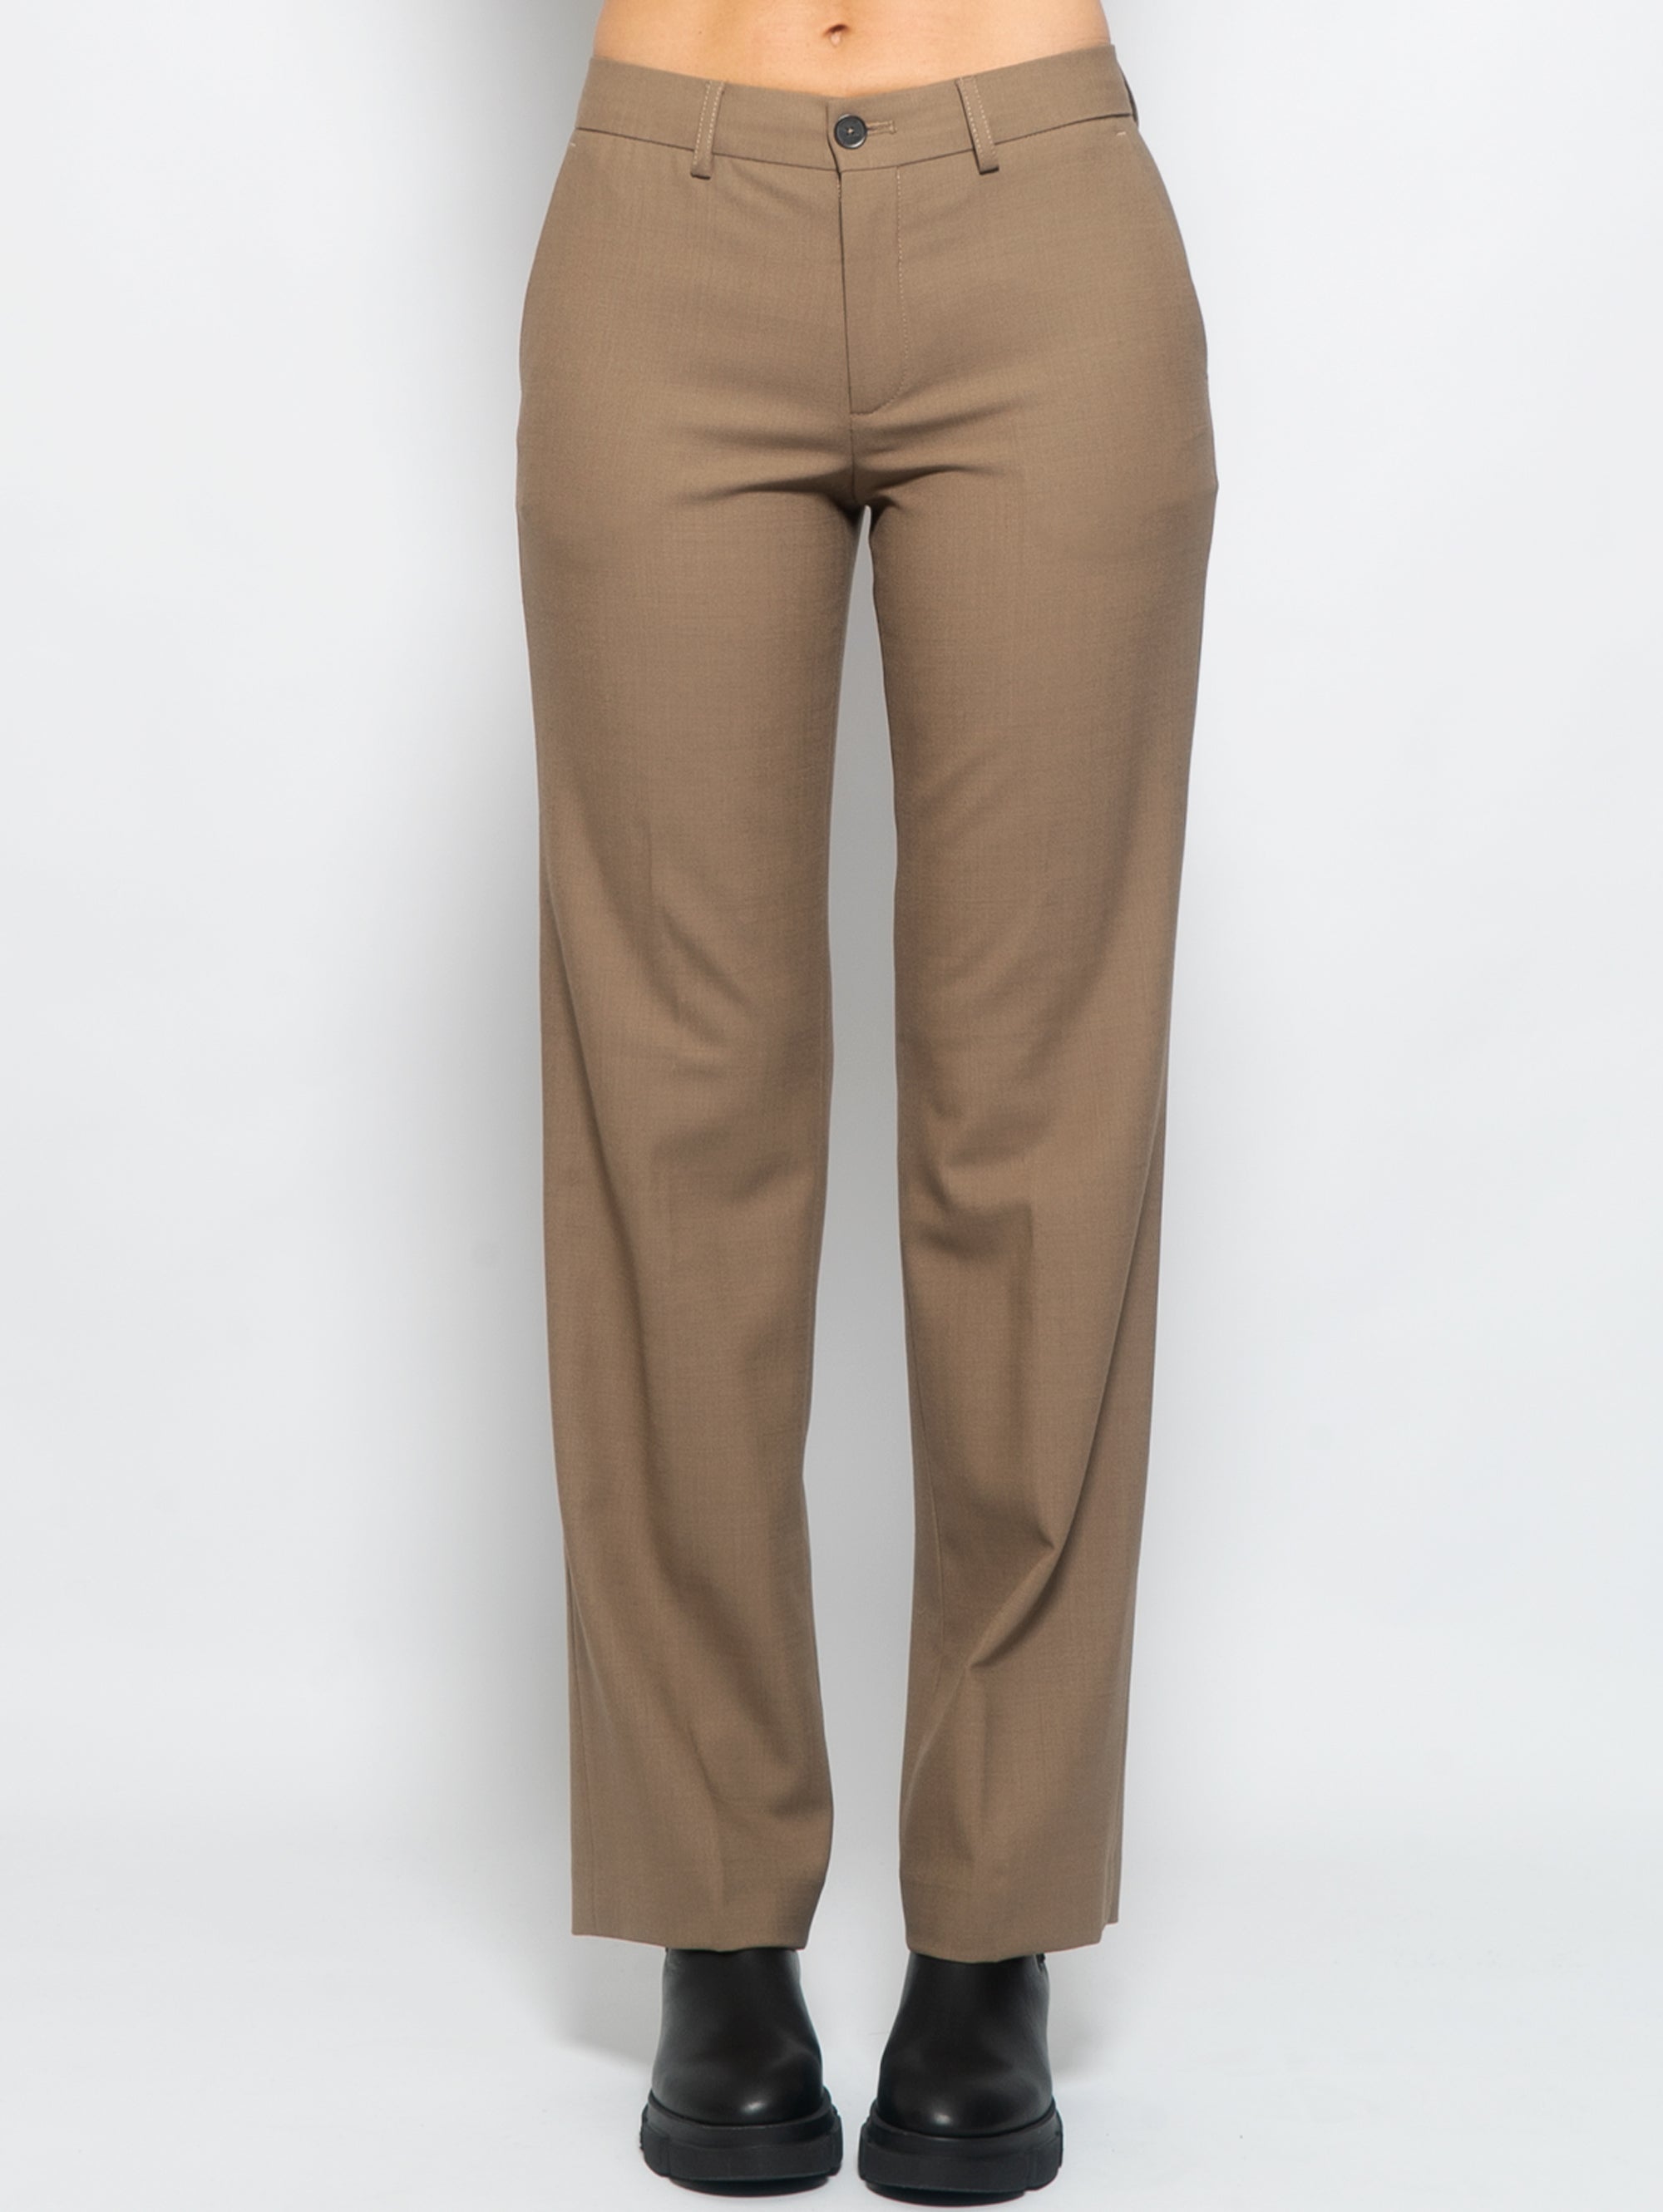 CLOSED-Pantaloni Chino in Lana Gamba Dritta Corteccia-TRYME Shop